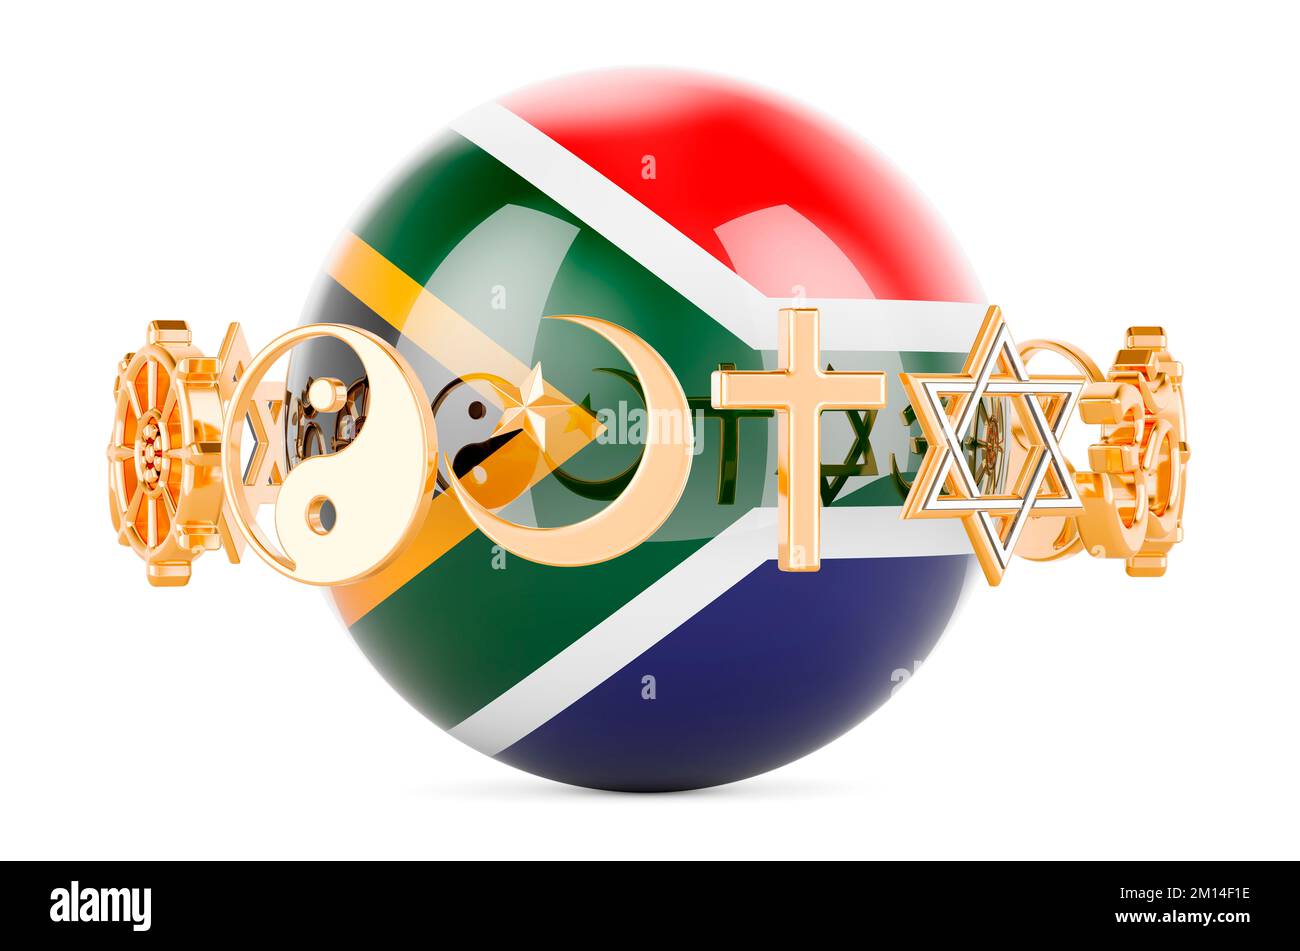 Drapeau sud-africain peint sur sphère avec des symboles de religions autour, 3D rendant isolé sur fond blanc Banque D'Images